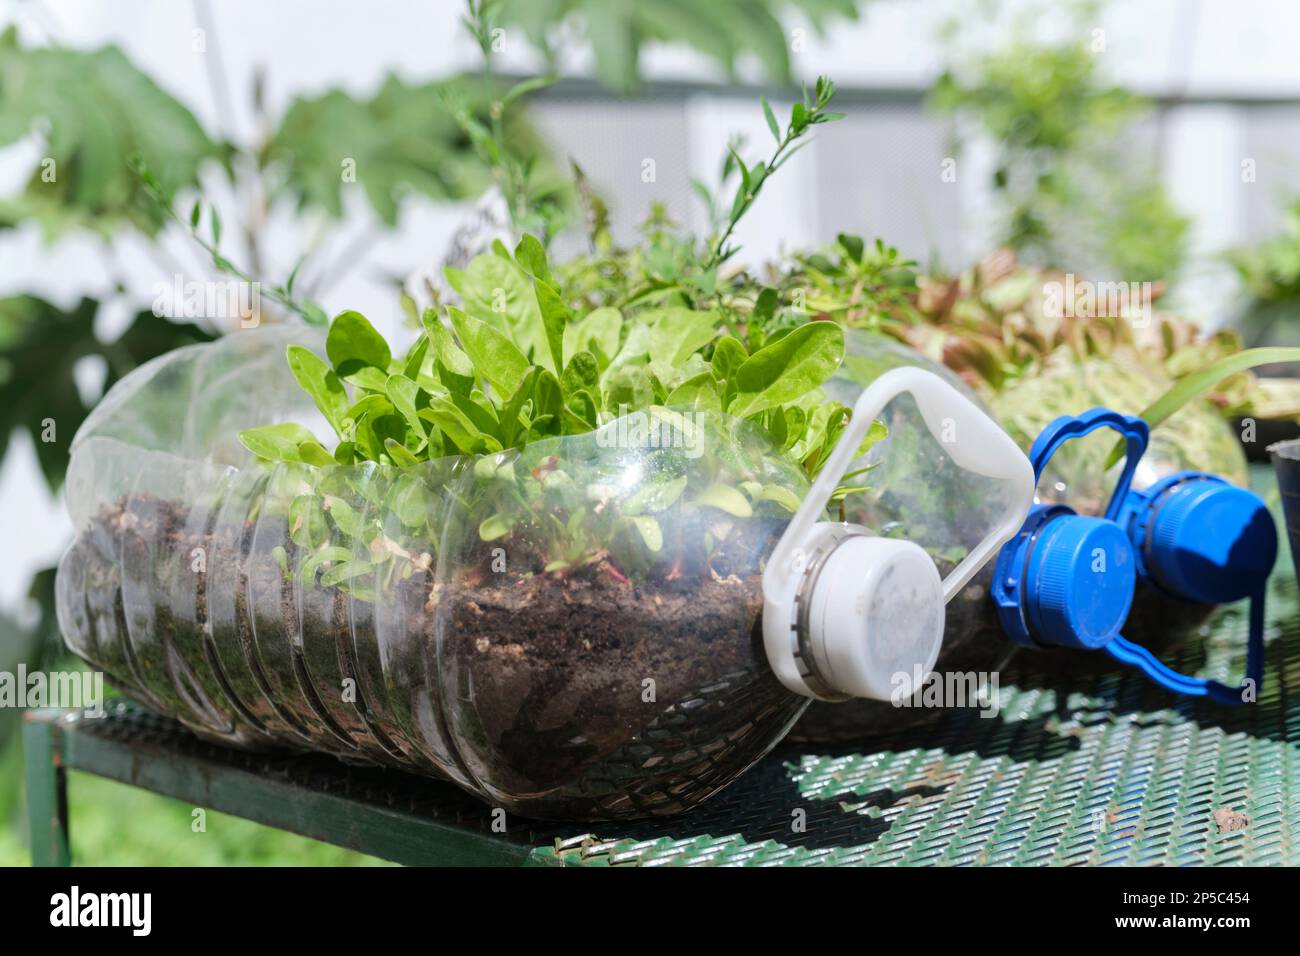 Piante verdi in bottiglie di plastica riutilizzate, orto urbano, produzione sostenibile di alimenti sani in città. Concetti di agricoltura ecologica Foto Stock